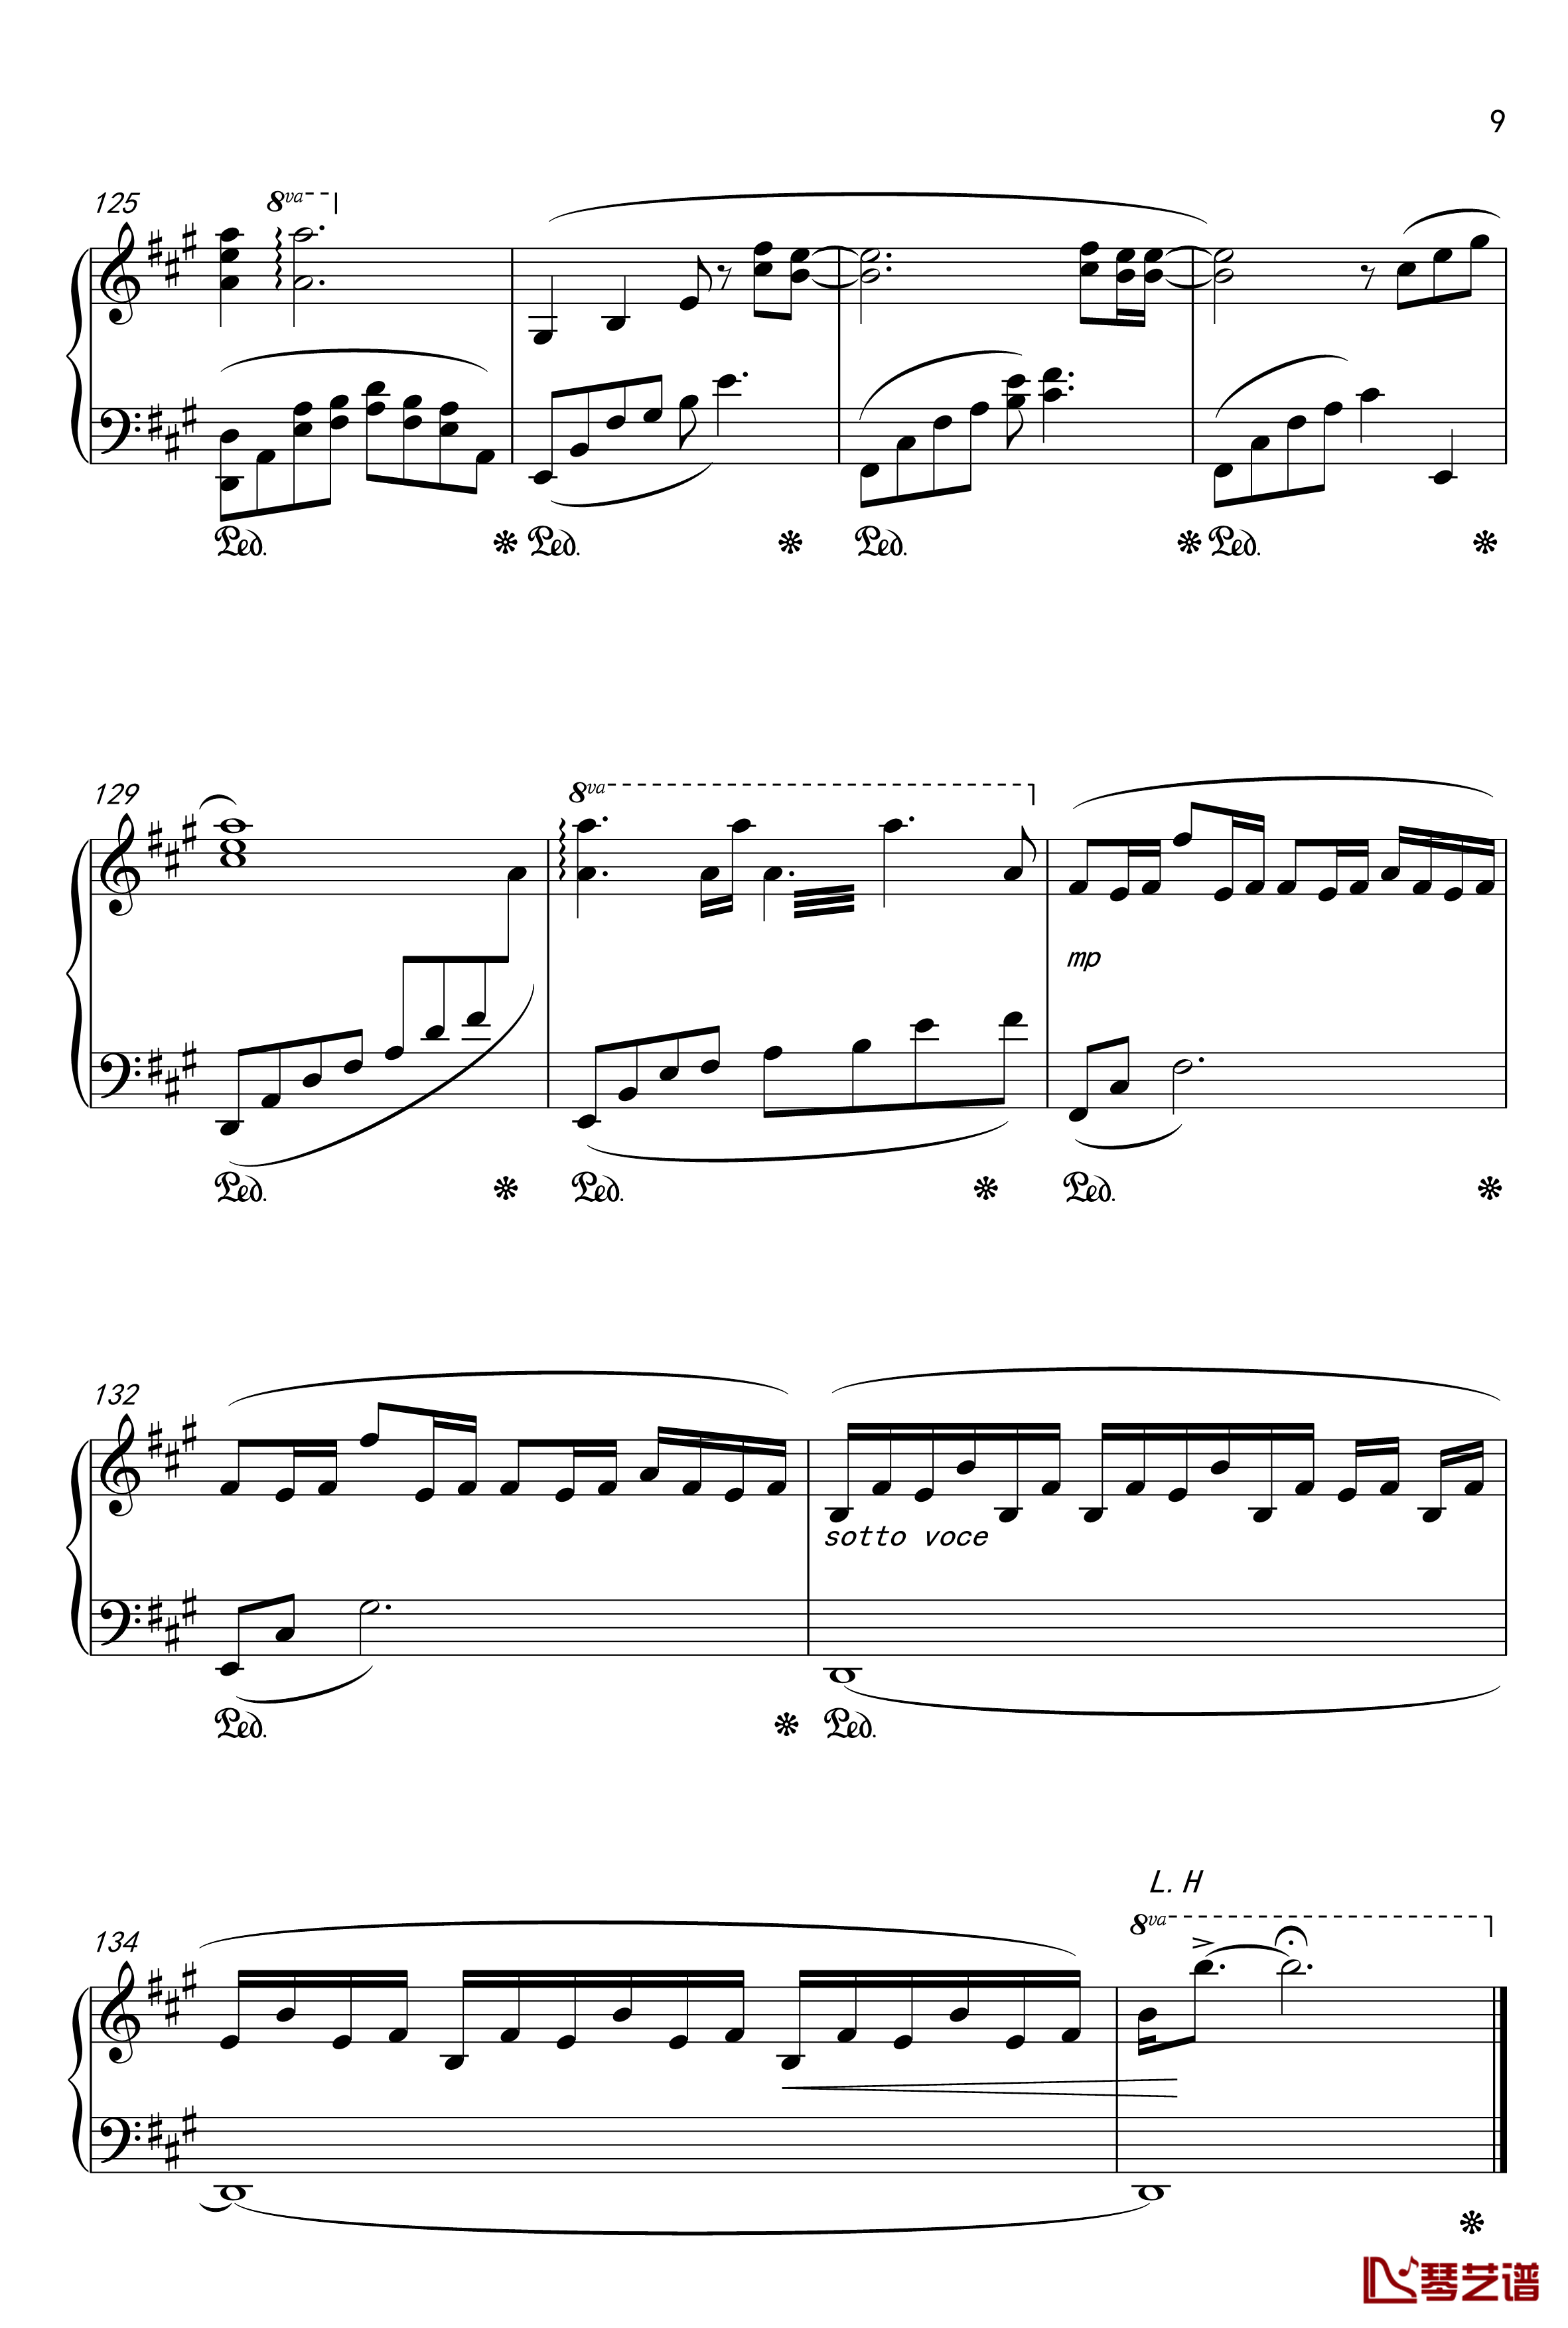 月夜に舞う恋の花-Piano Instrumental-钢琴谱-千の刃涛9